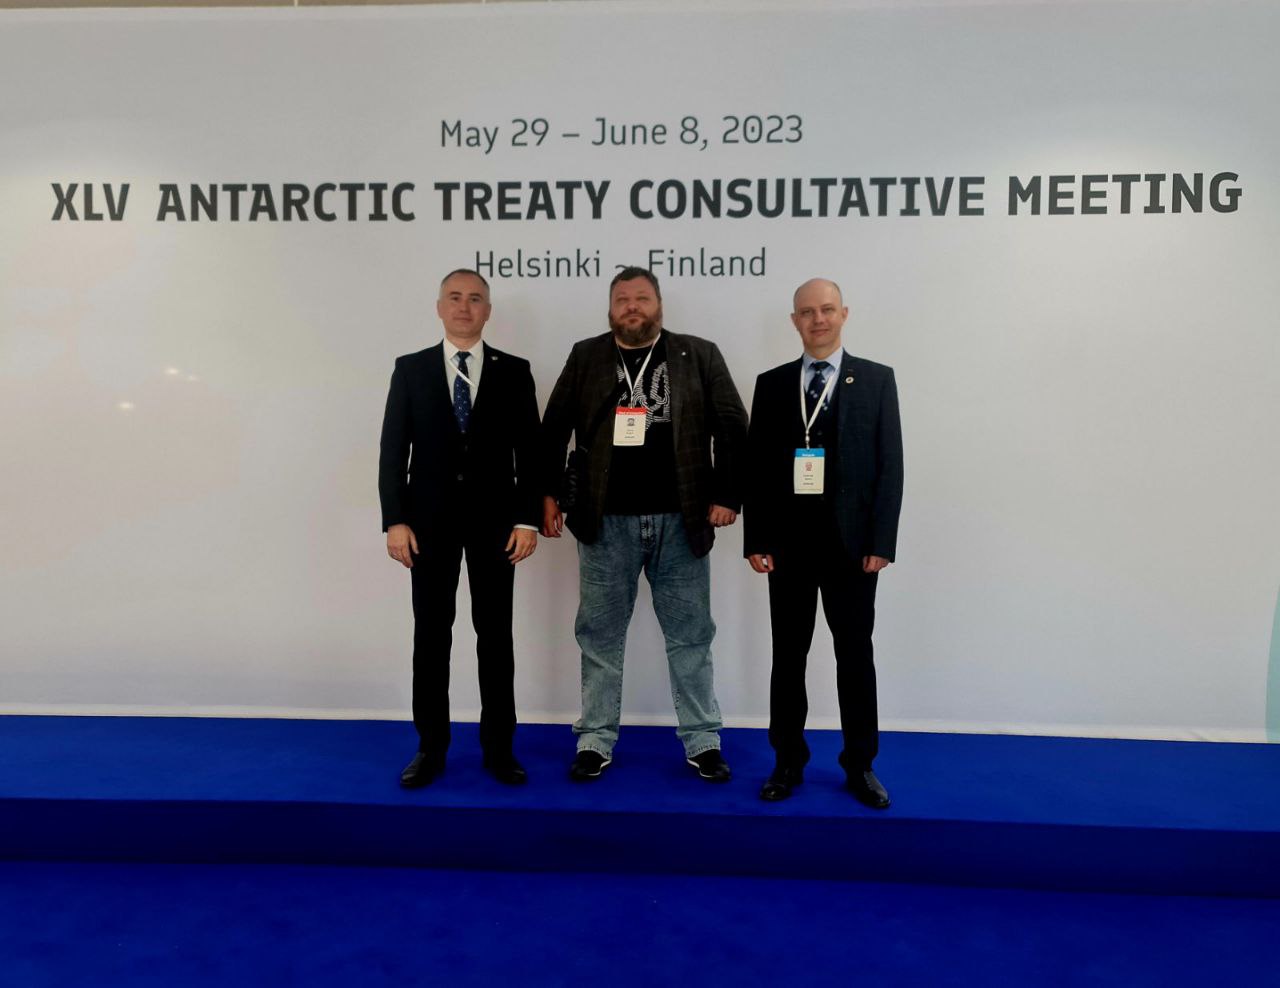 Наслідки військової агресії рф для української антарктичної програми представлені на консультативній нараді з Договору про Антарктику